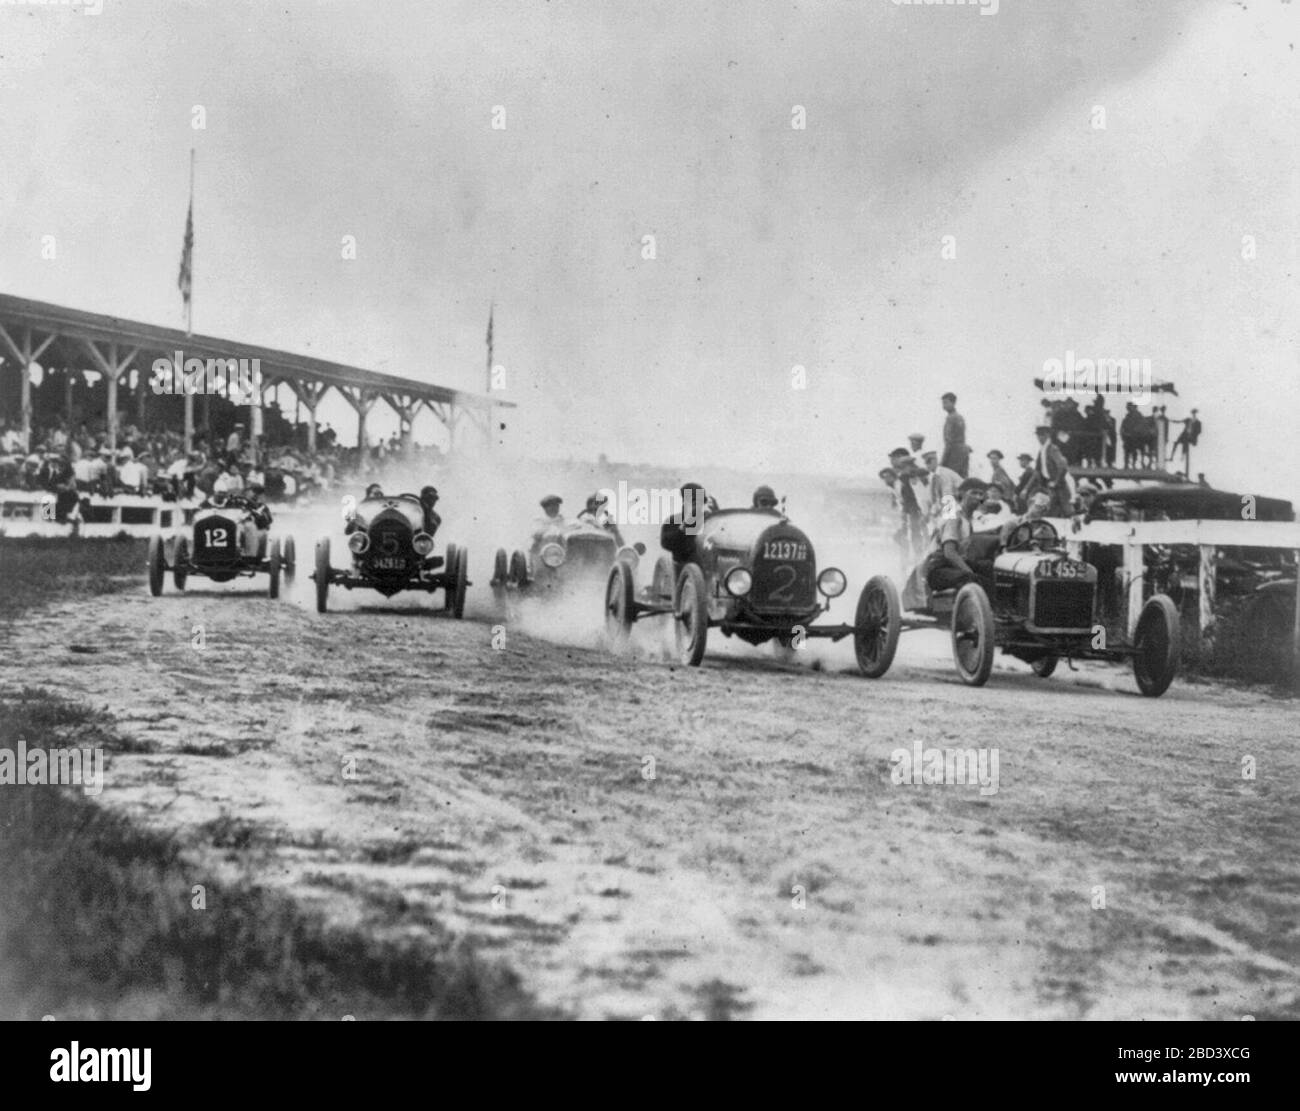 Course automobile à Washington ou près de Washington, D.C. - vue de la courbe d'arrondi des autos de deux hommes, vers 1922 Banque D'Images